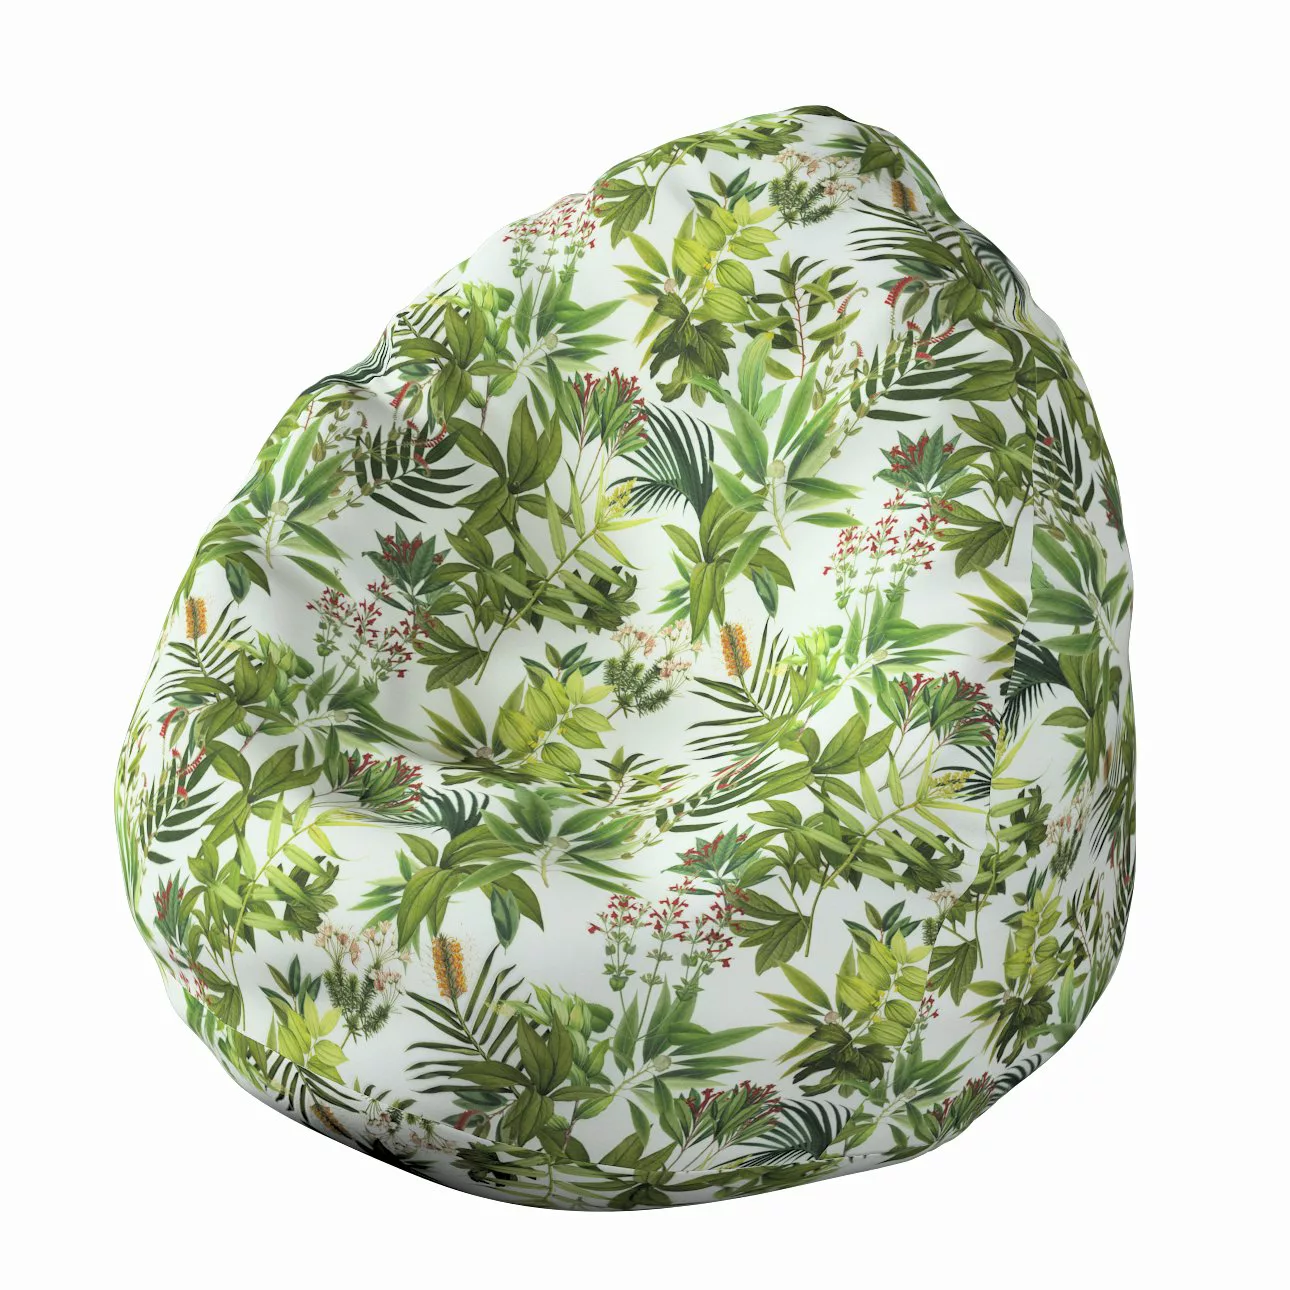 Bezug für Sitzsack, grün-weiß, Bezug für Sitzsack Ø50 x 85 cm, Tropical Isl günstig online kaufen